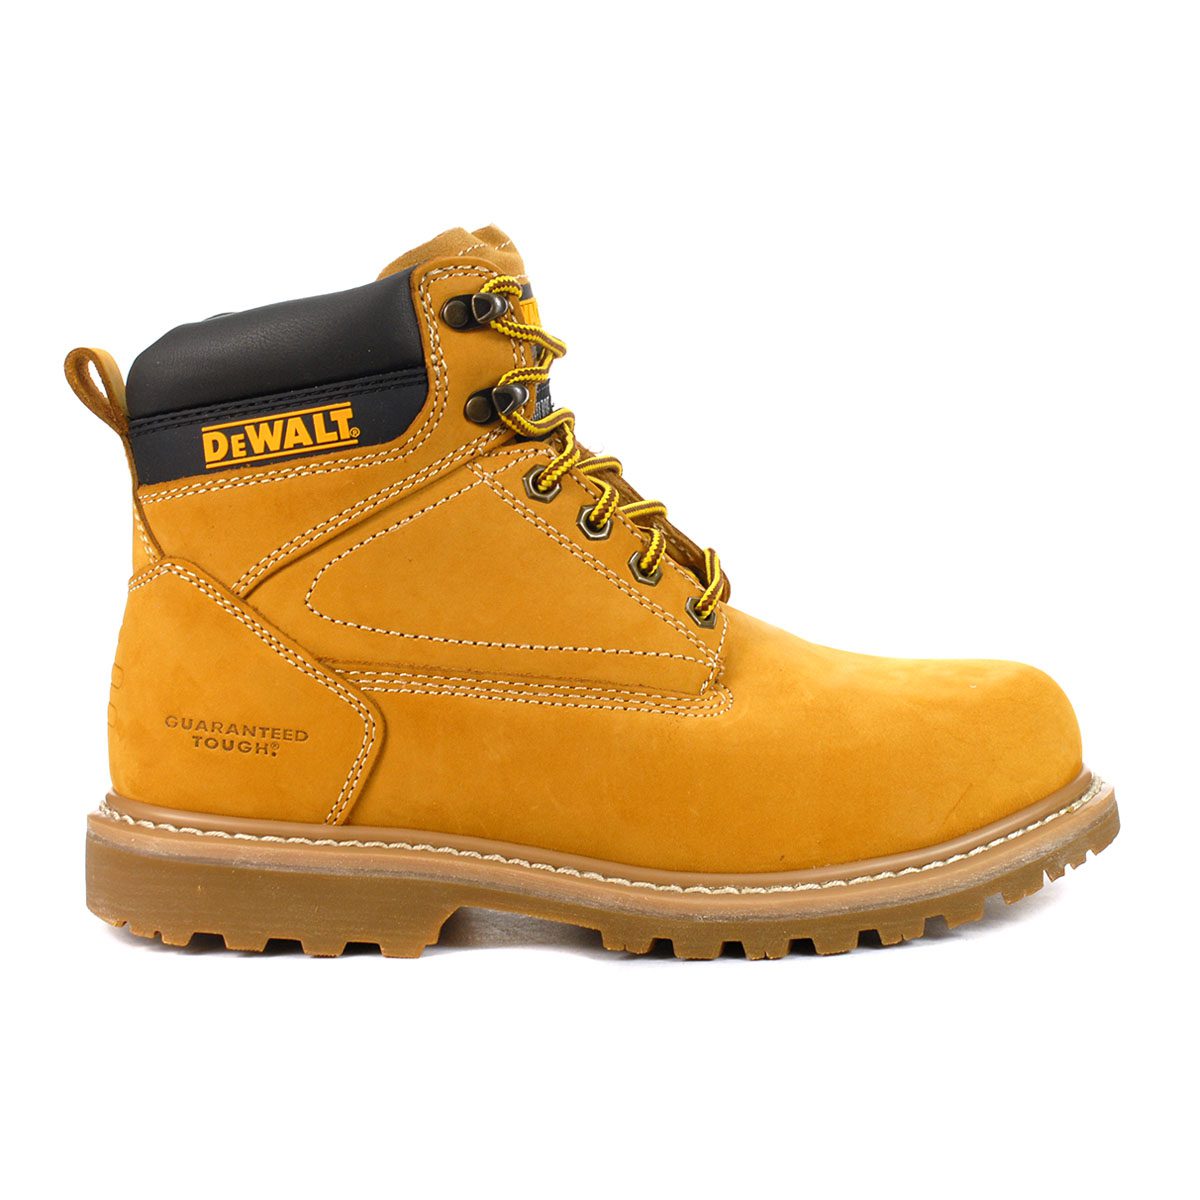 DeWalt Men's Axle Wheat Steel Toe Work Boots DXWP28010WWHT - WOOKI.COM